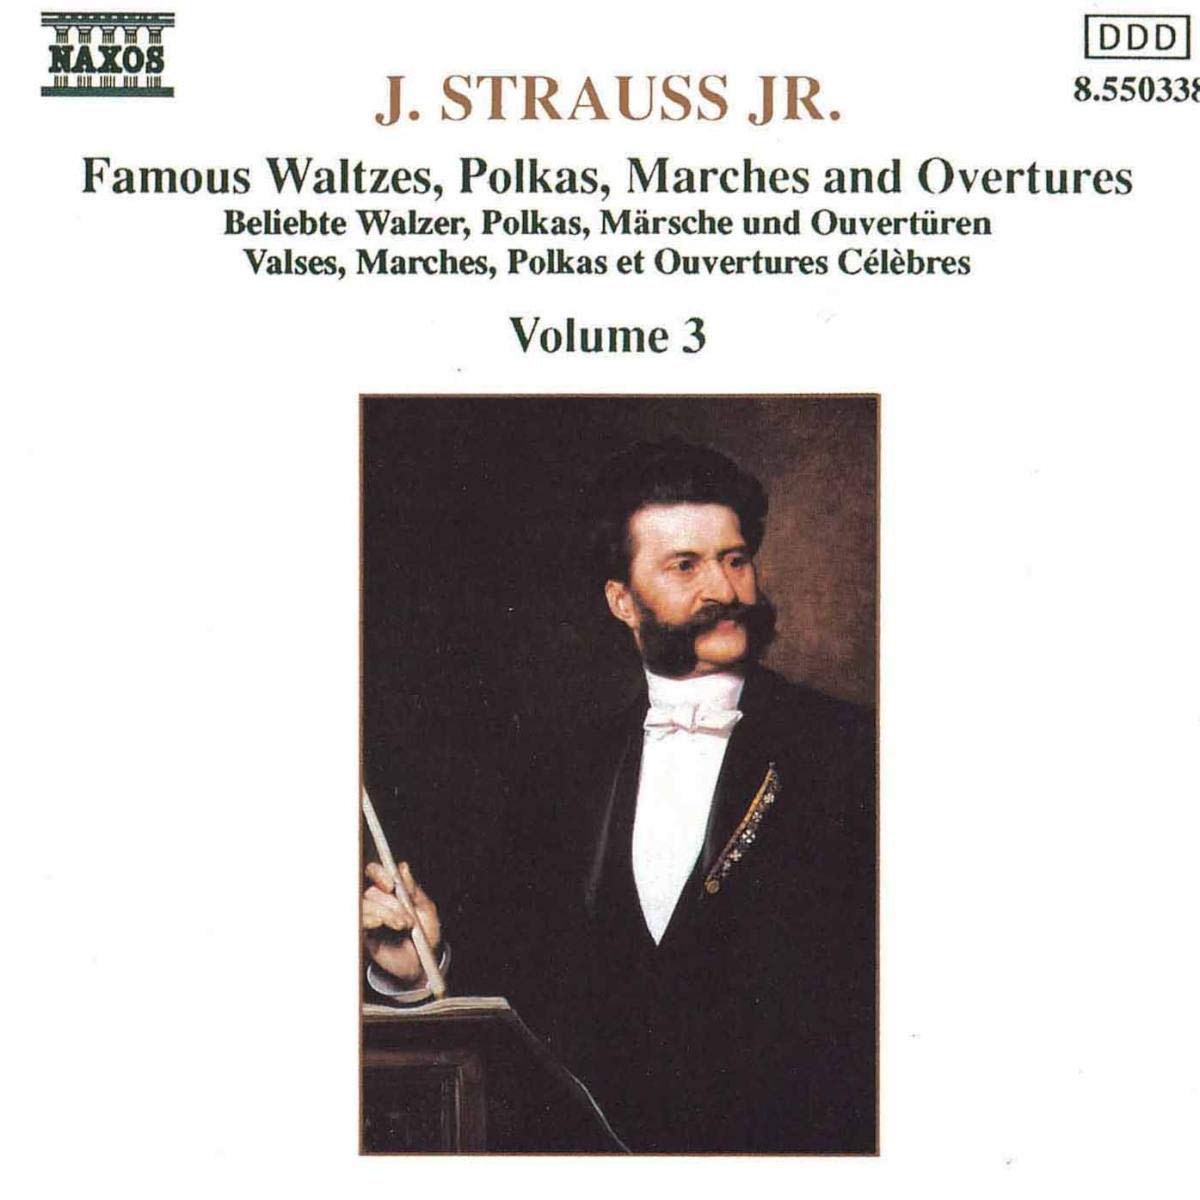 The Best of Johann.Strauss Jr.  vol. 3